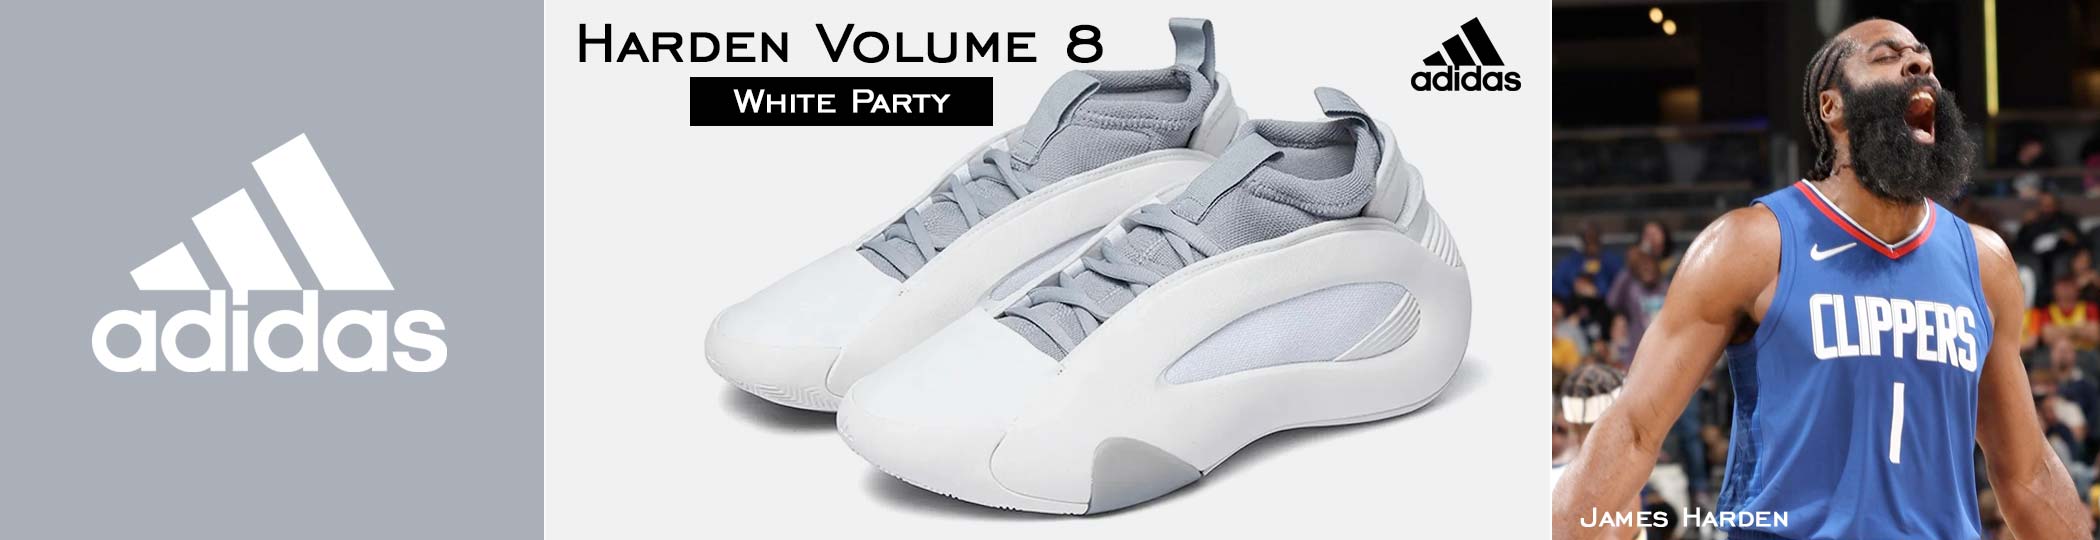 Harden Volume 8 - White Party